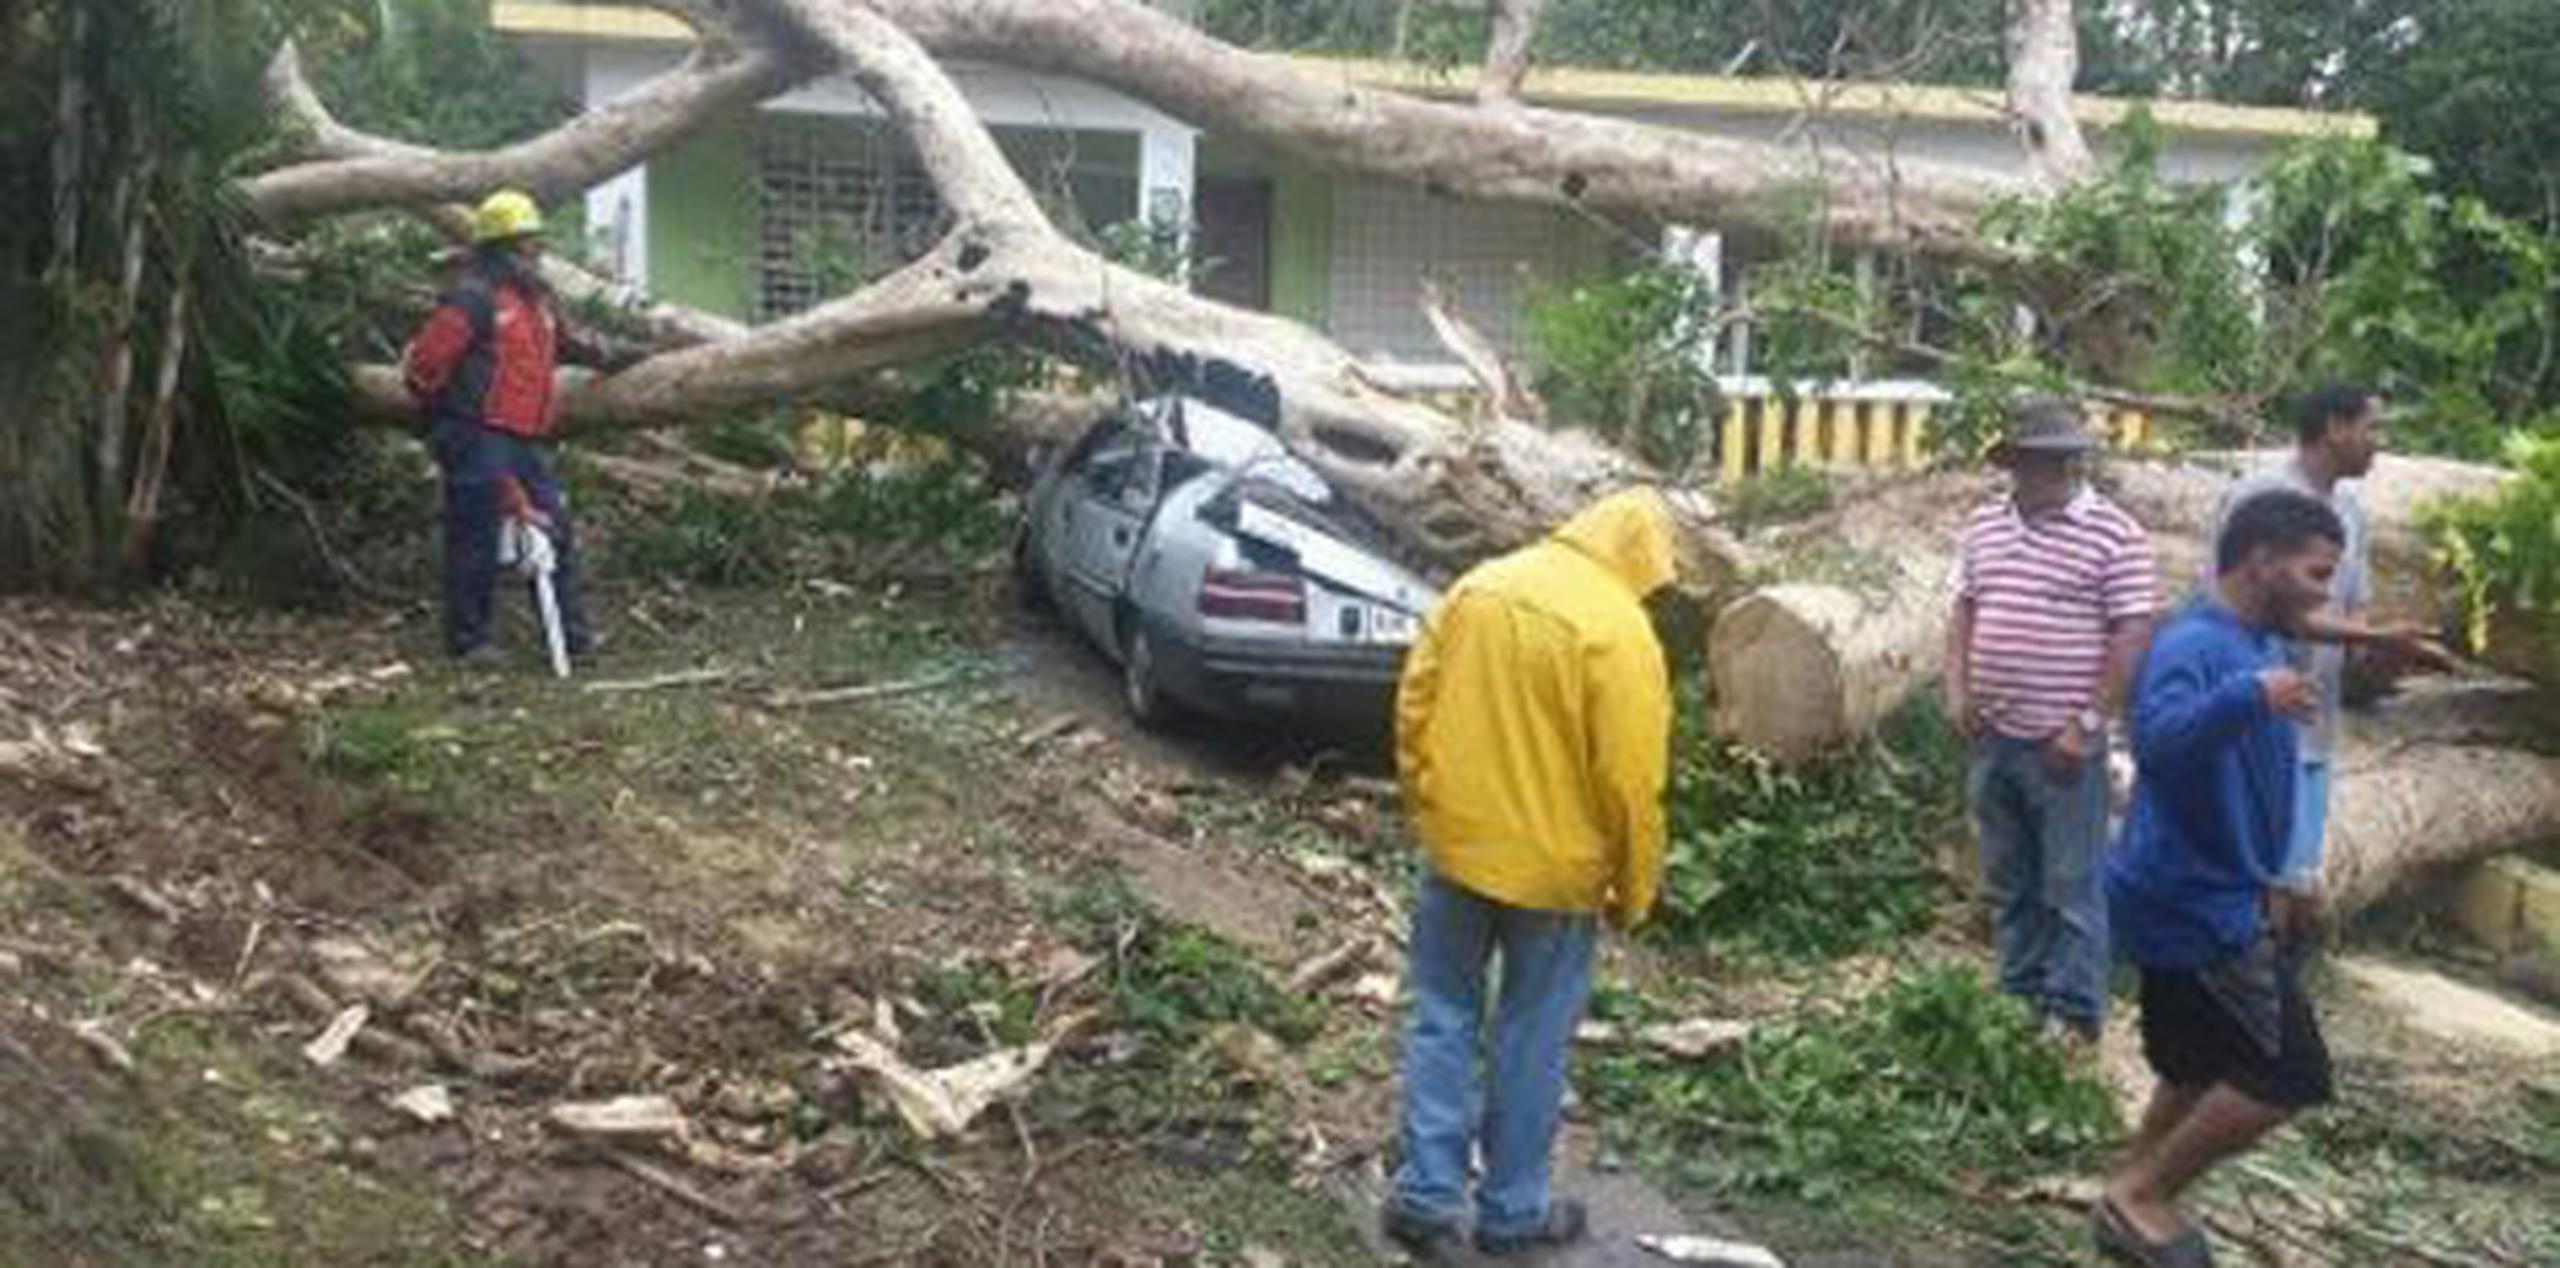 Manejo de Emergencias indicó que el incidente fue temprano el sábado y ya en la tarde habían removido el árbol. (Suministrada)